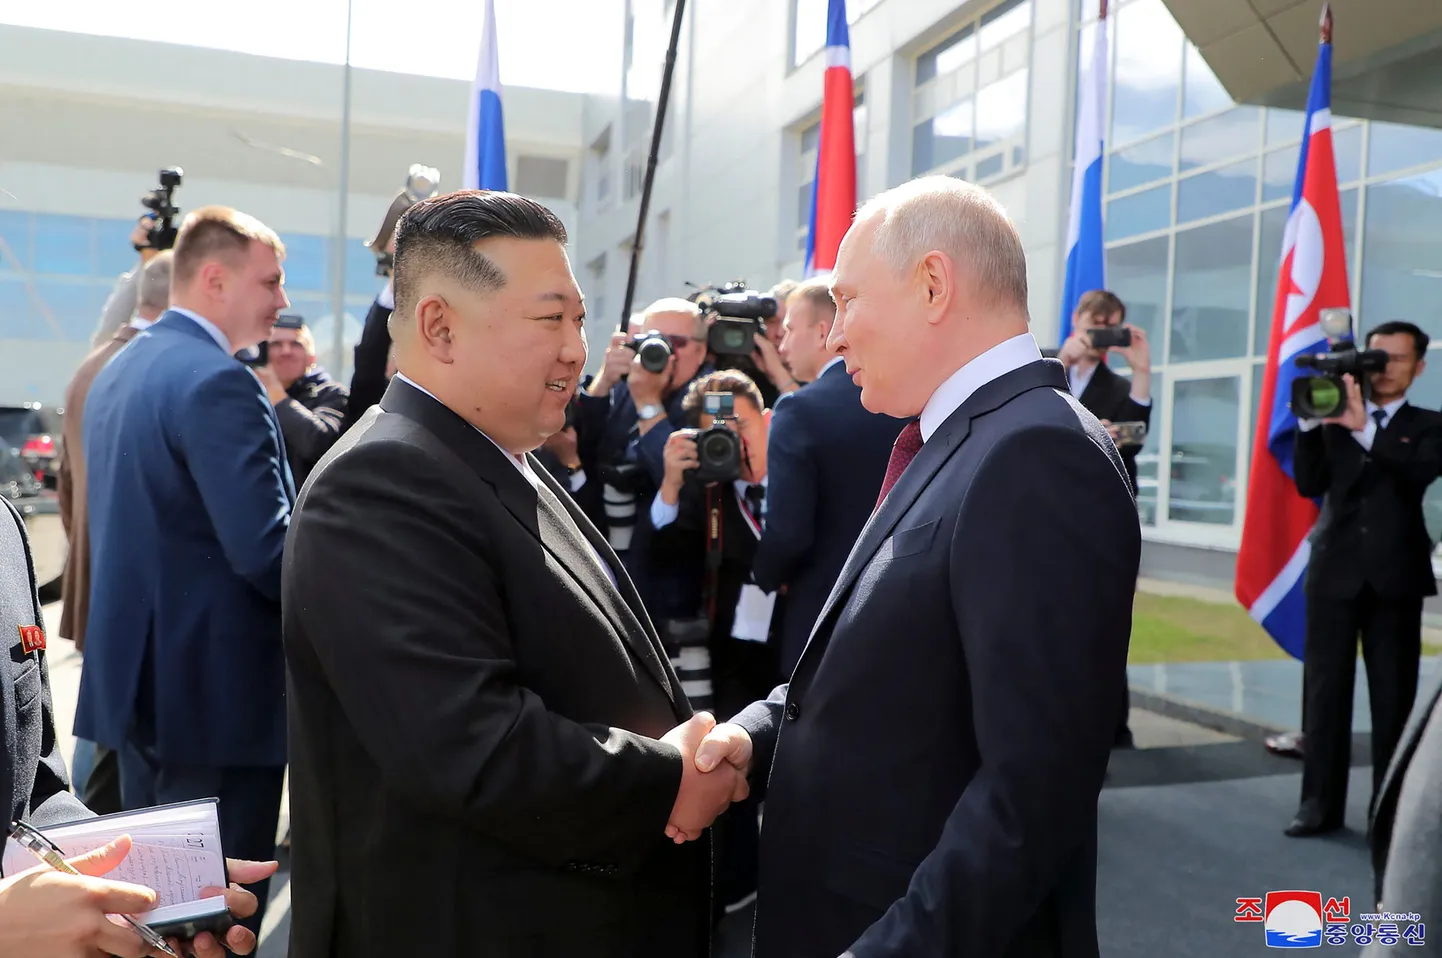 Ziemeļkorejas vadonis Kims Čenuns un Krievijas diktators Vladimirs Putins.